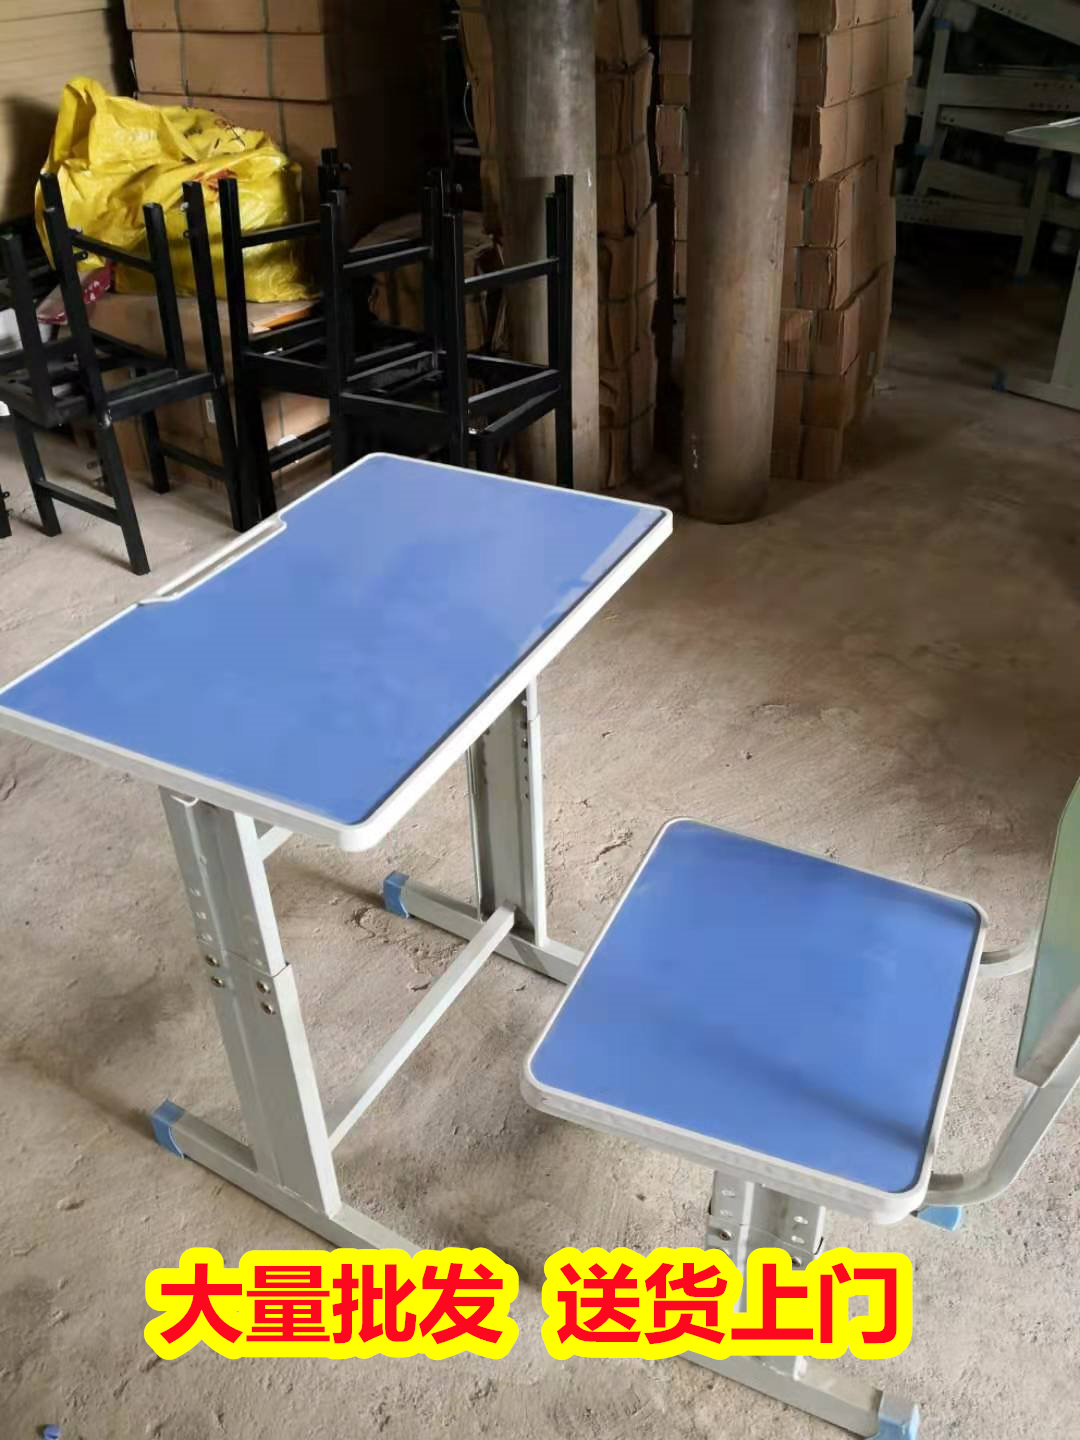 批发供应百色西林全木课桌椅,可折叠课桌椅